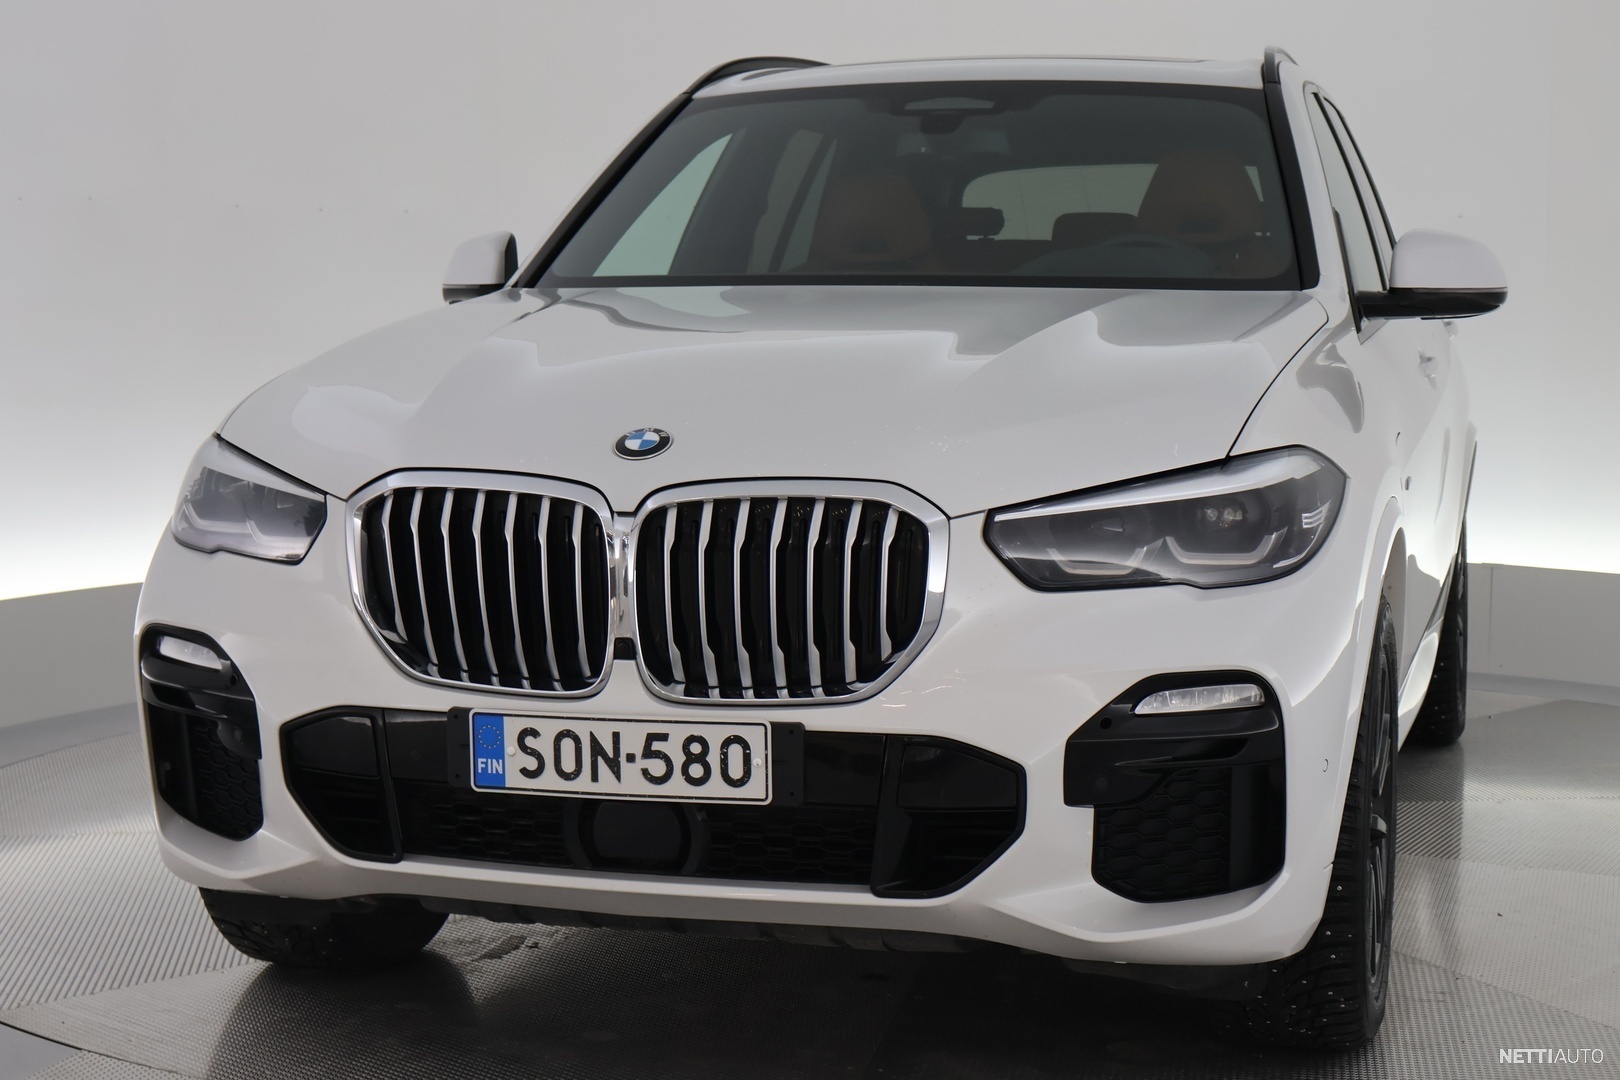 BMW X5 (G05, F95) xDrive 45 e iPerformance 394 PS (19-) Spurverbreiterungen  Eibach Pro-Spacer S90-2-10-038 System2 Dicke 10mm - Eibach Schweiz - Online  Shop